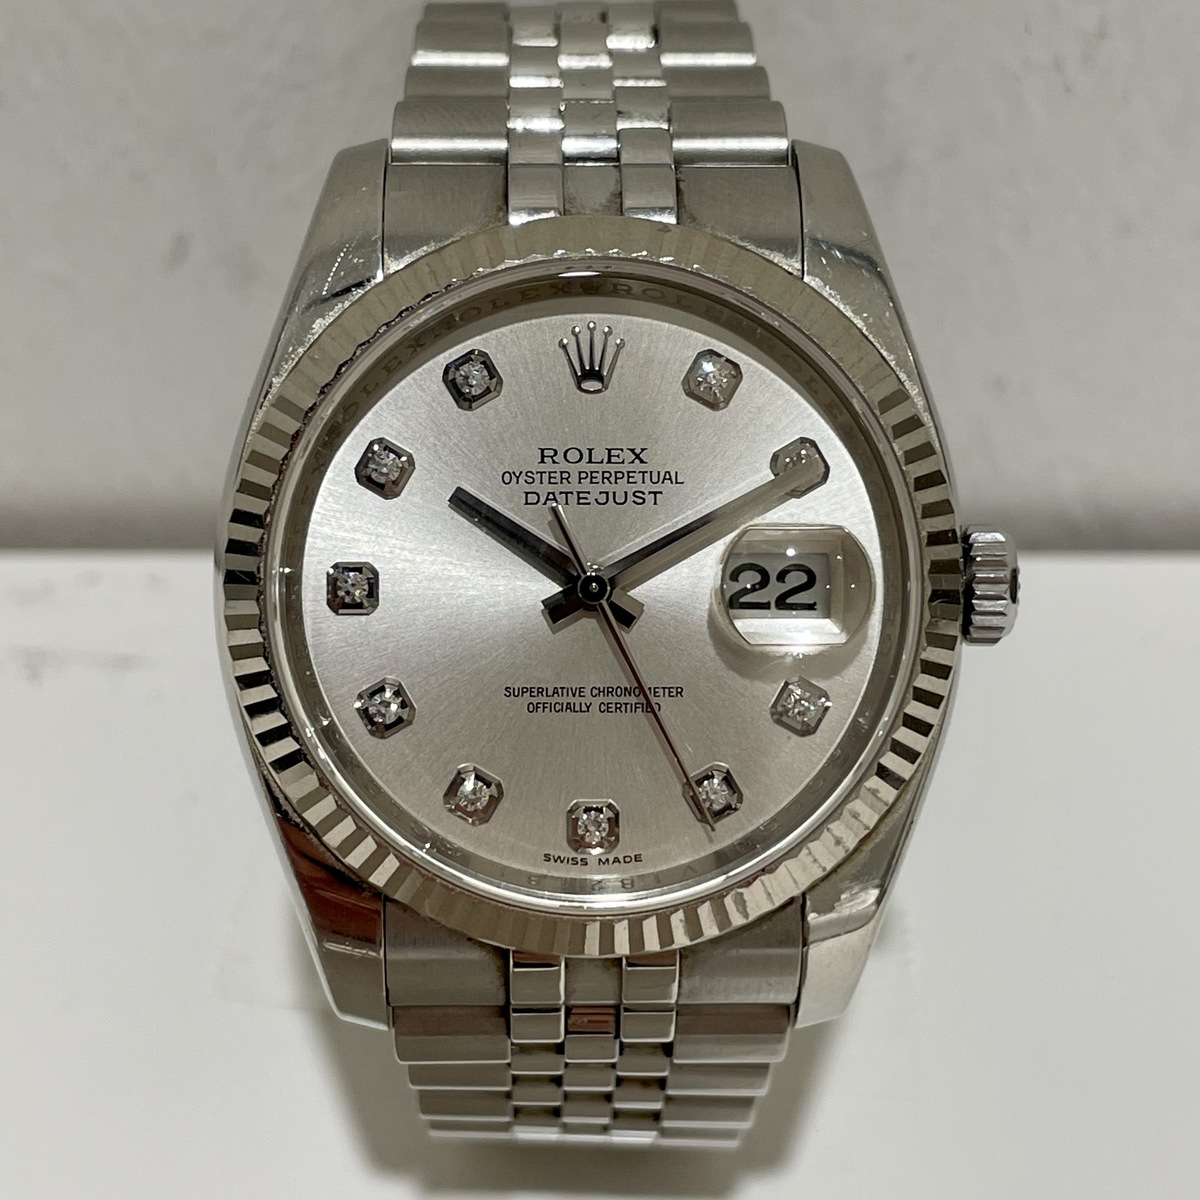 ロレックスのオイスターパーペチュアル SS/WG 116234G V番 自動巻き 腕時計の買取実績です。